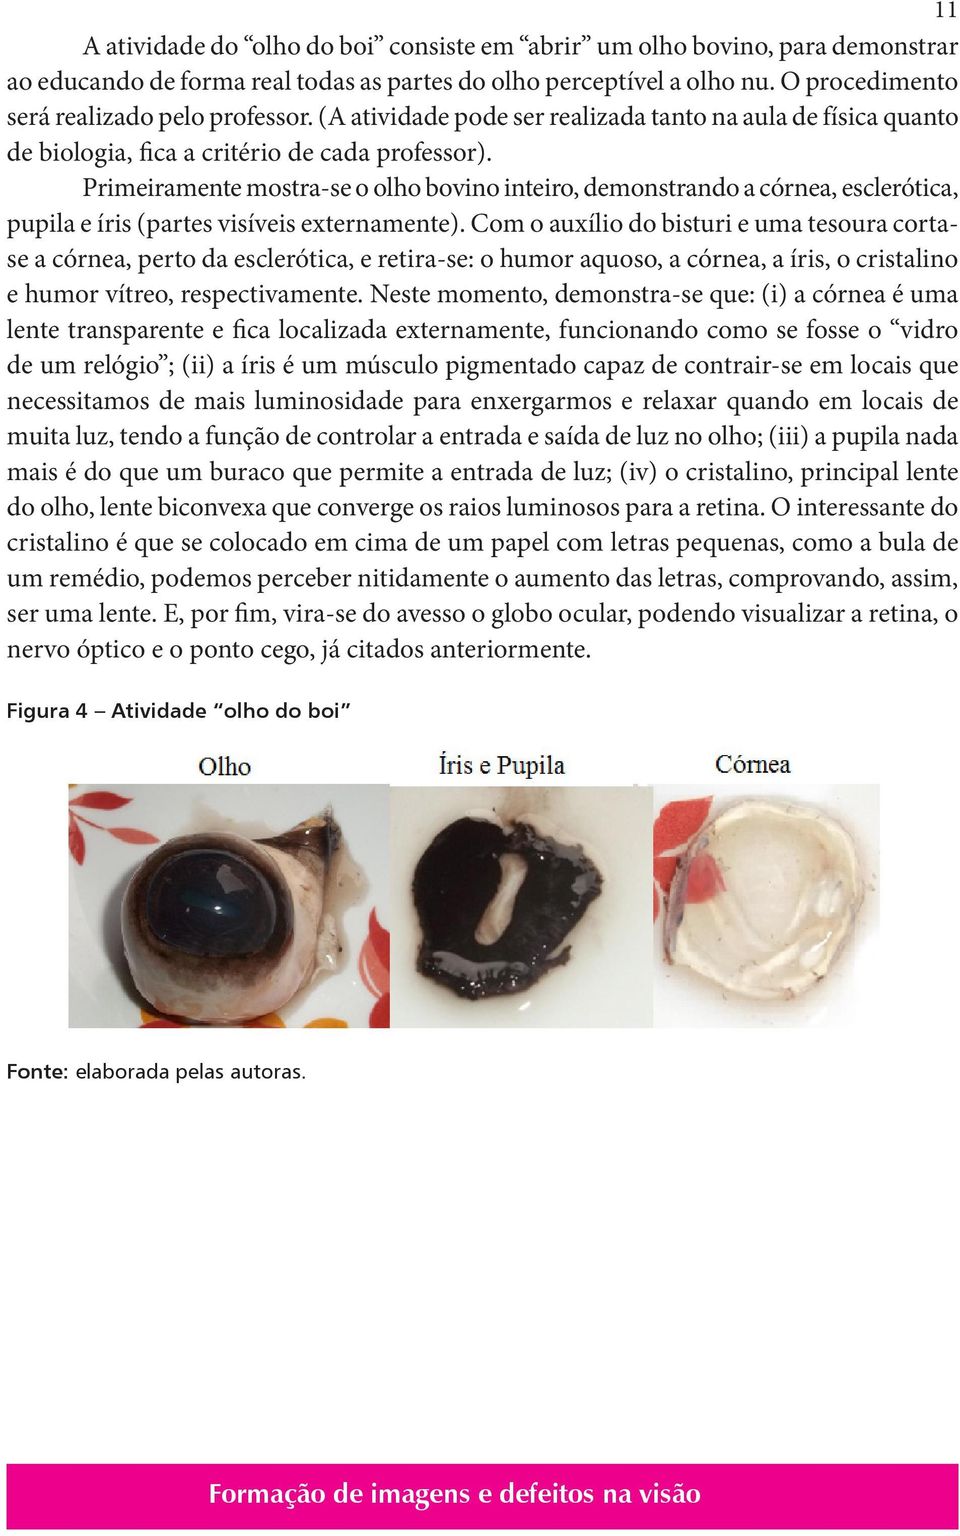 Primeiramente mostra-se o olho bovino inteiro, demonstrando a córnea, esclerótica, pupila e íris (partes visíveis externamente).